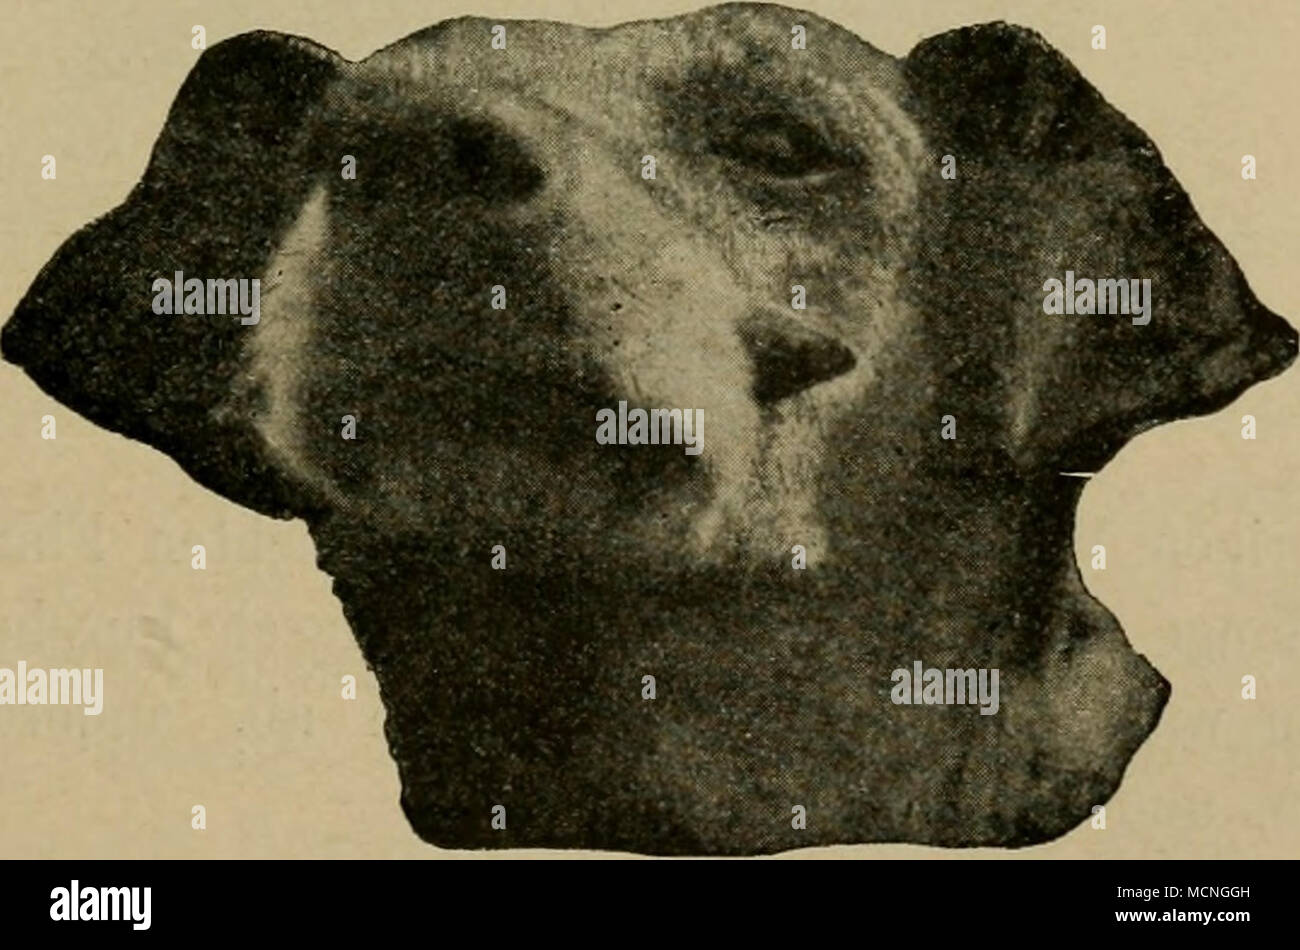 Hornbildung im Gesicht des Hundes (Schindelka). Reibel (Americ.rev.,  1908,S. 750) bildet ein von der linken von herabhängendes Schafes Schulter,  47 cm langes, an der im Umfang Base 67 cm grosses, sich